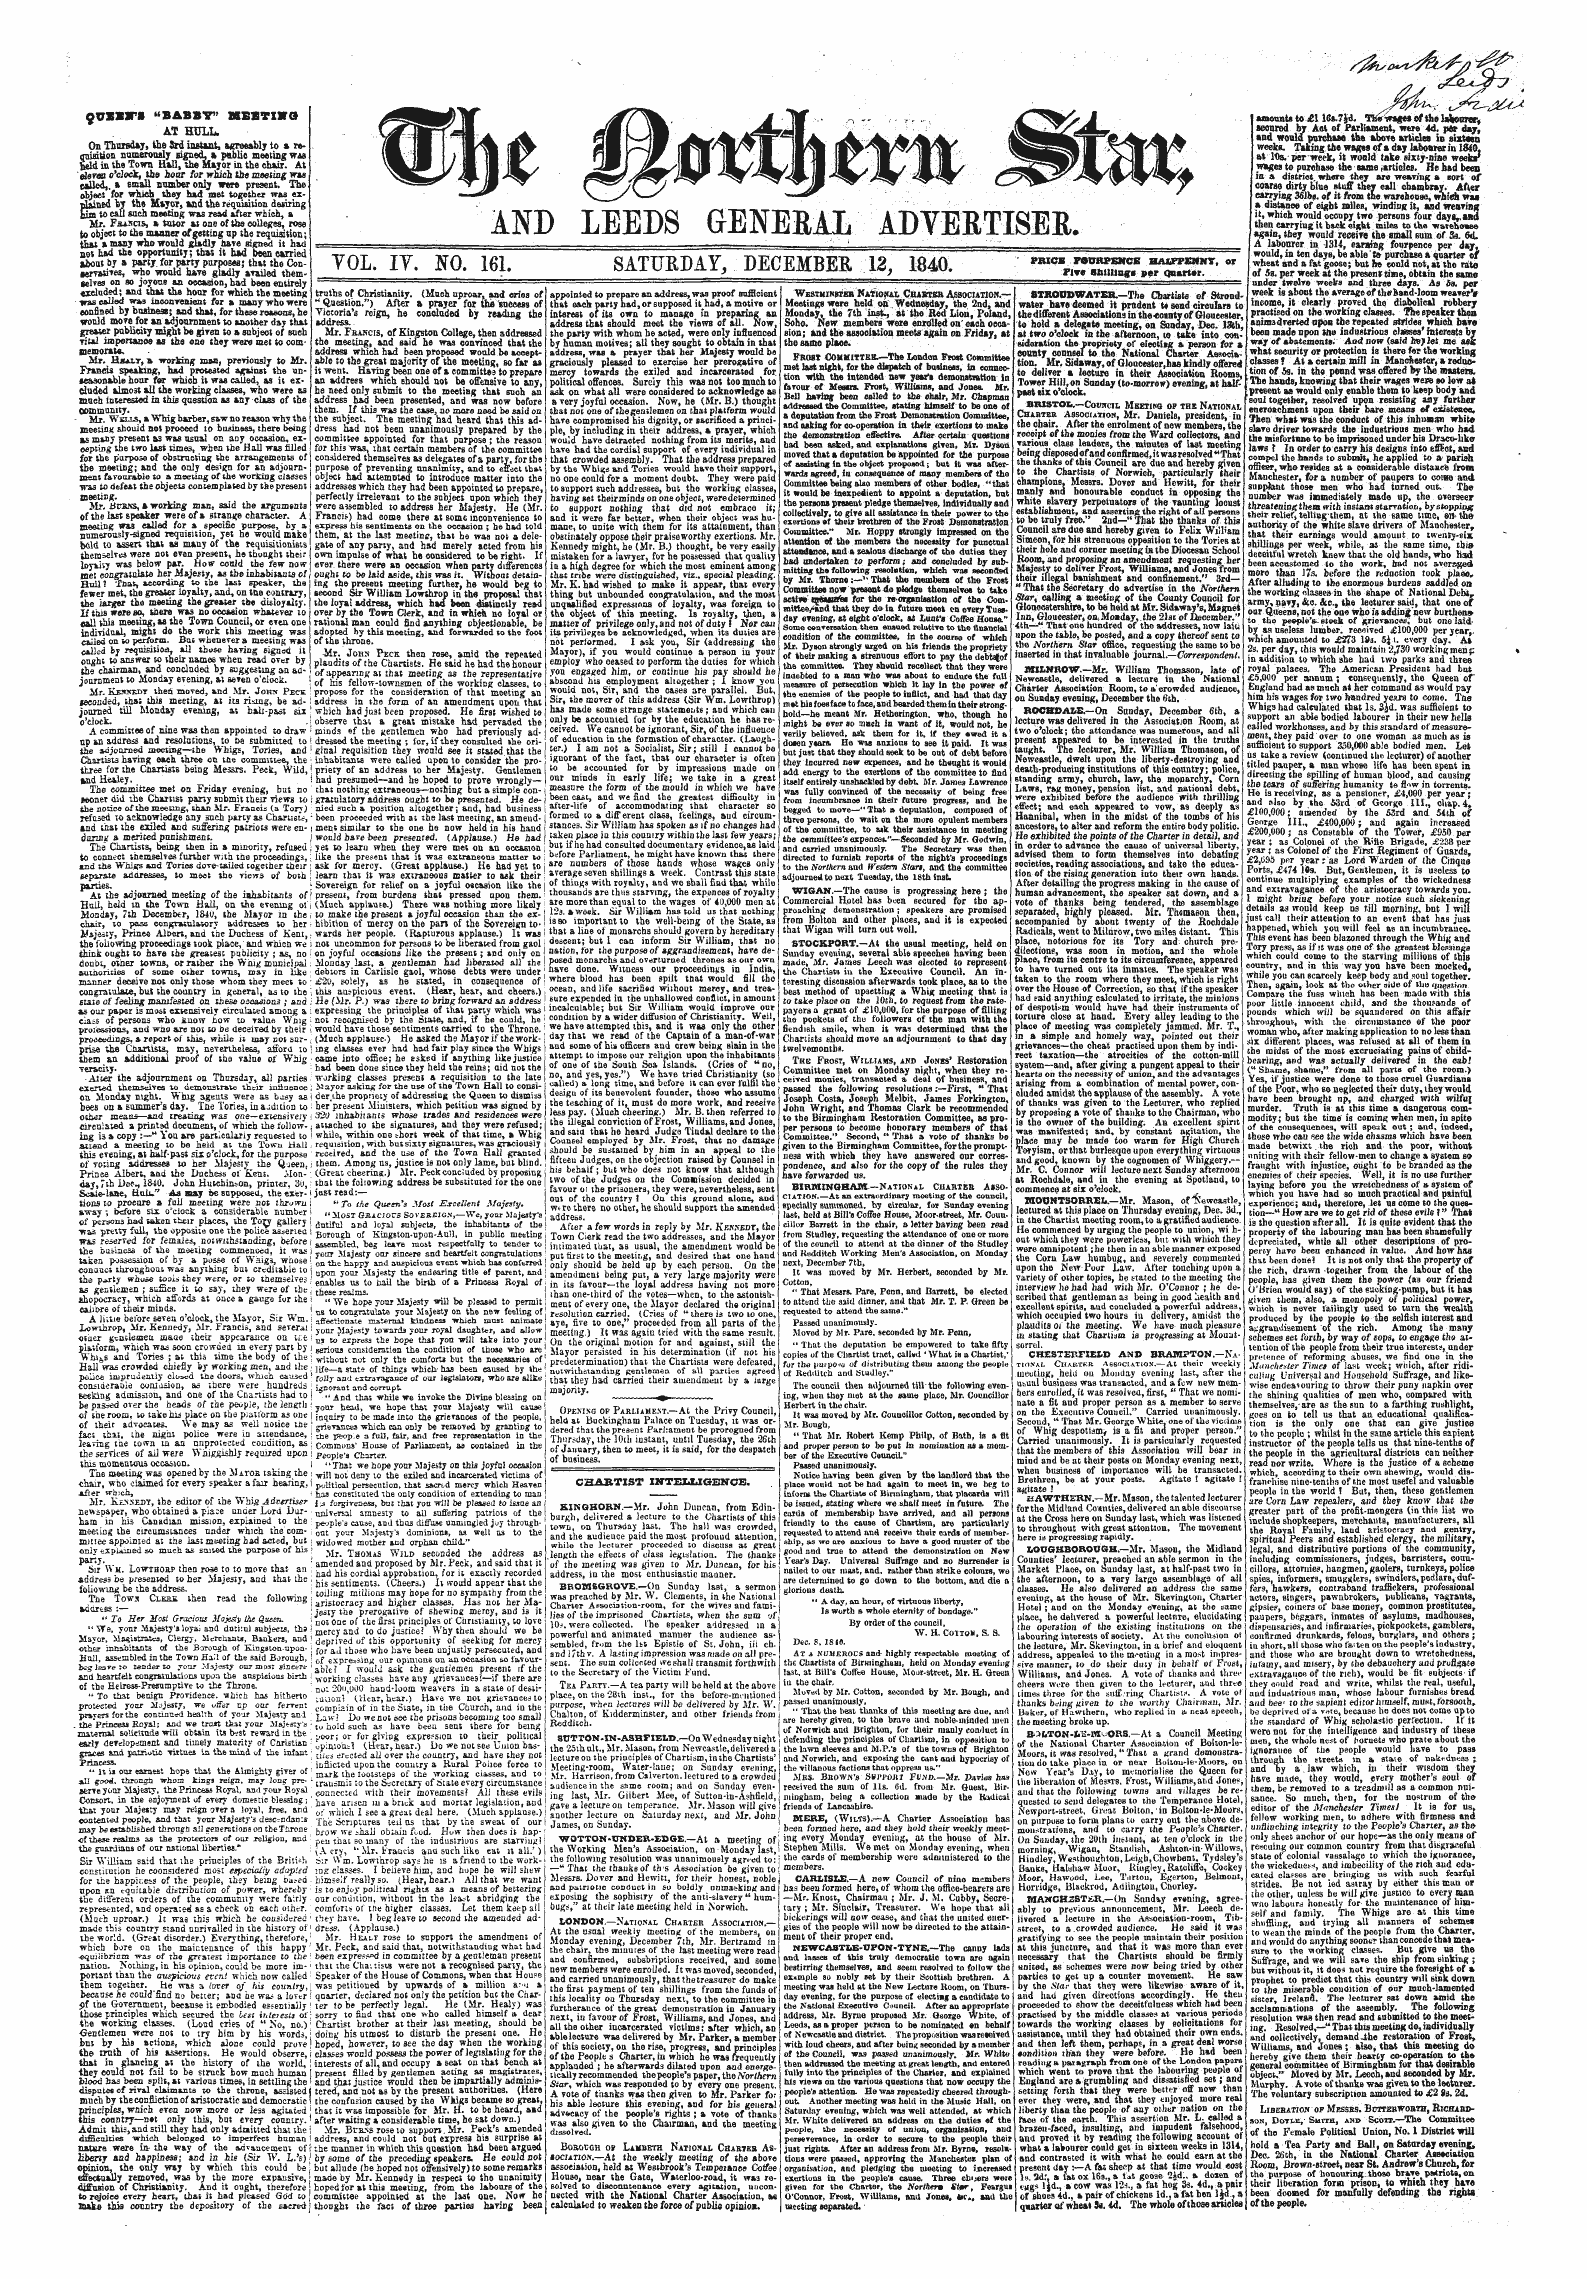 Northern Star (1837-1852): jS F Y, 4th edition - Ouesira "Babby" Msstxxg Yol. It, Ffo. 161. Saturday, December 13, 1840, &Gt;Wc ^^^,^Sr R V Or